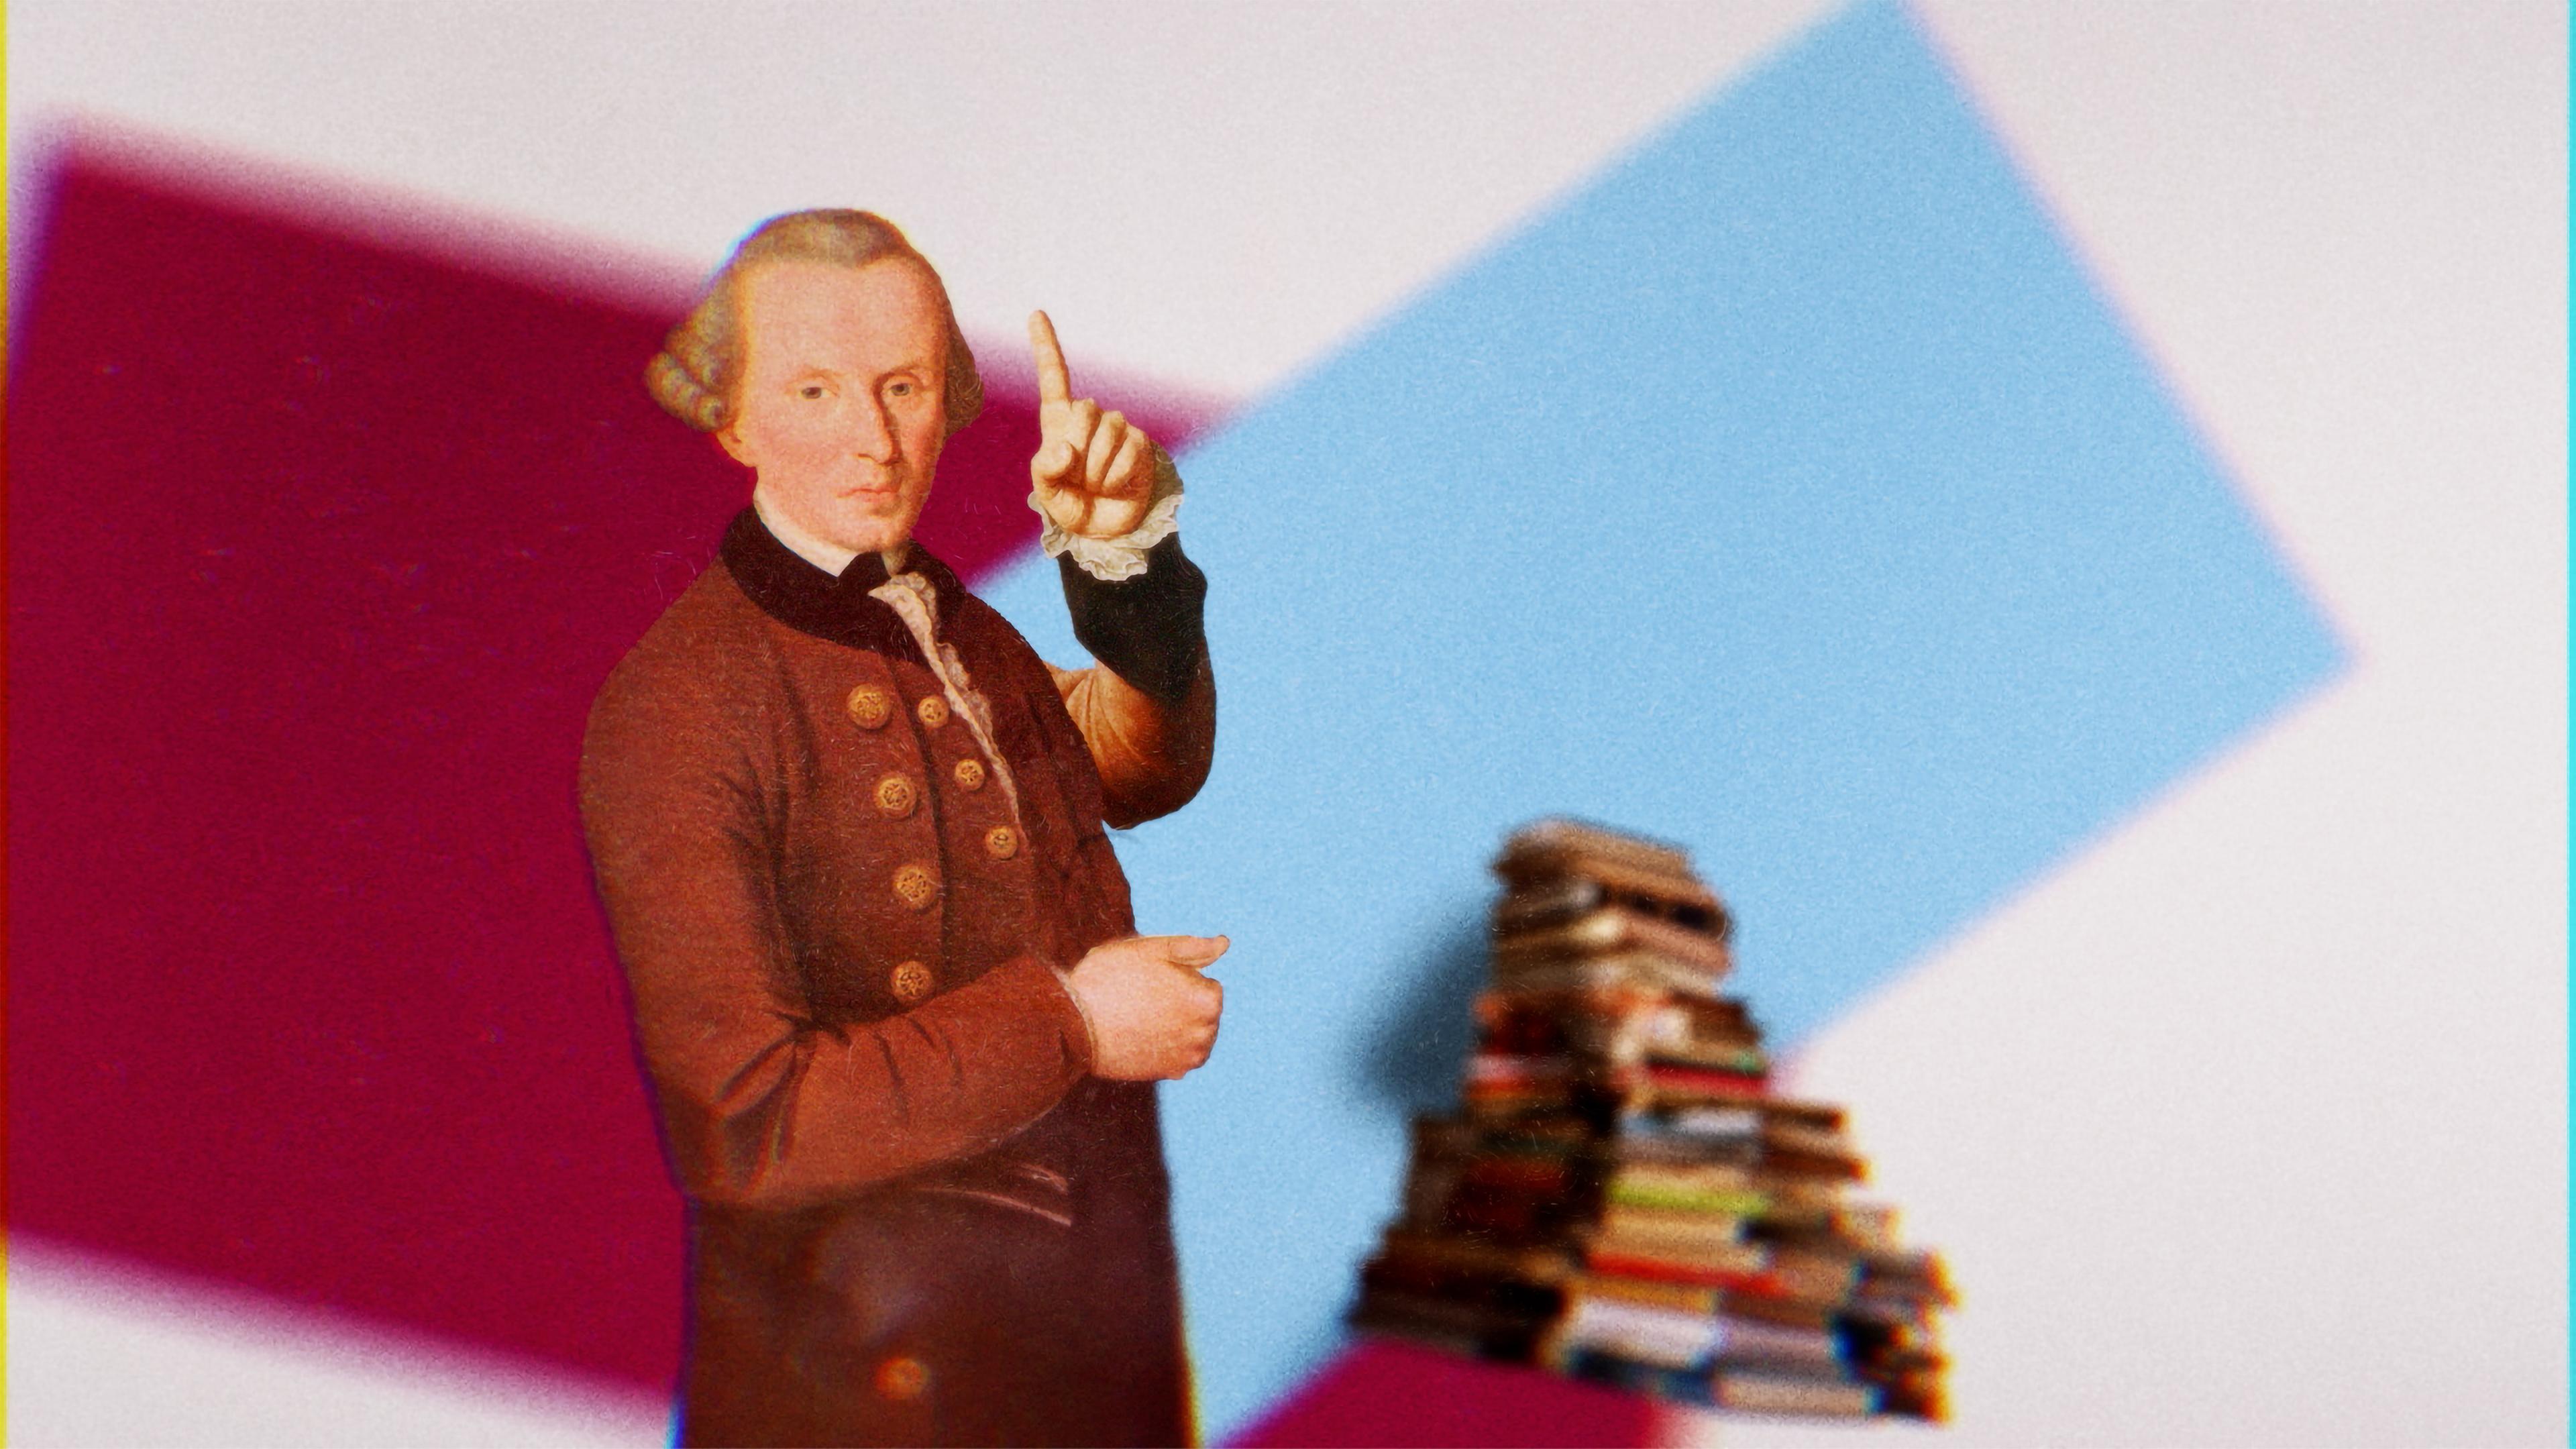 Das zusammen montierte Bild zeigt eine historische Grafik von einem Mann mit Perücke und Gehrock, der einen Zeigefinger hoch hält neben einem Bücherstapel.